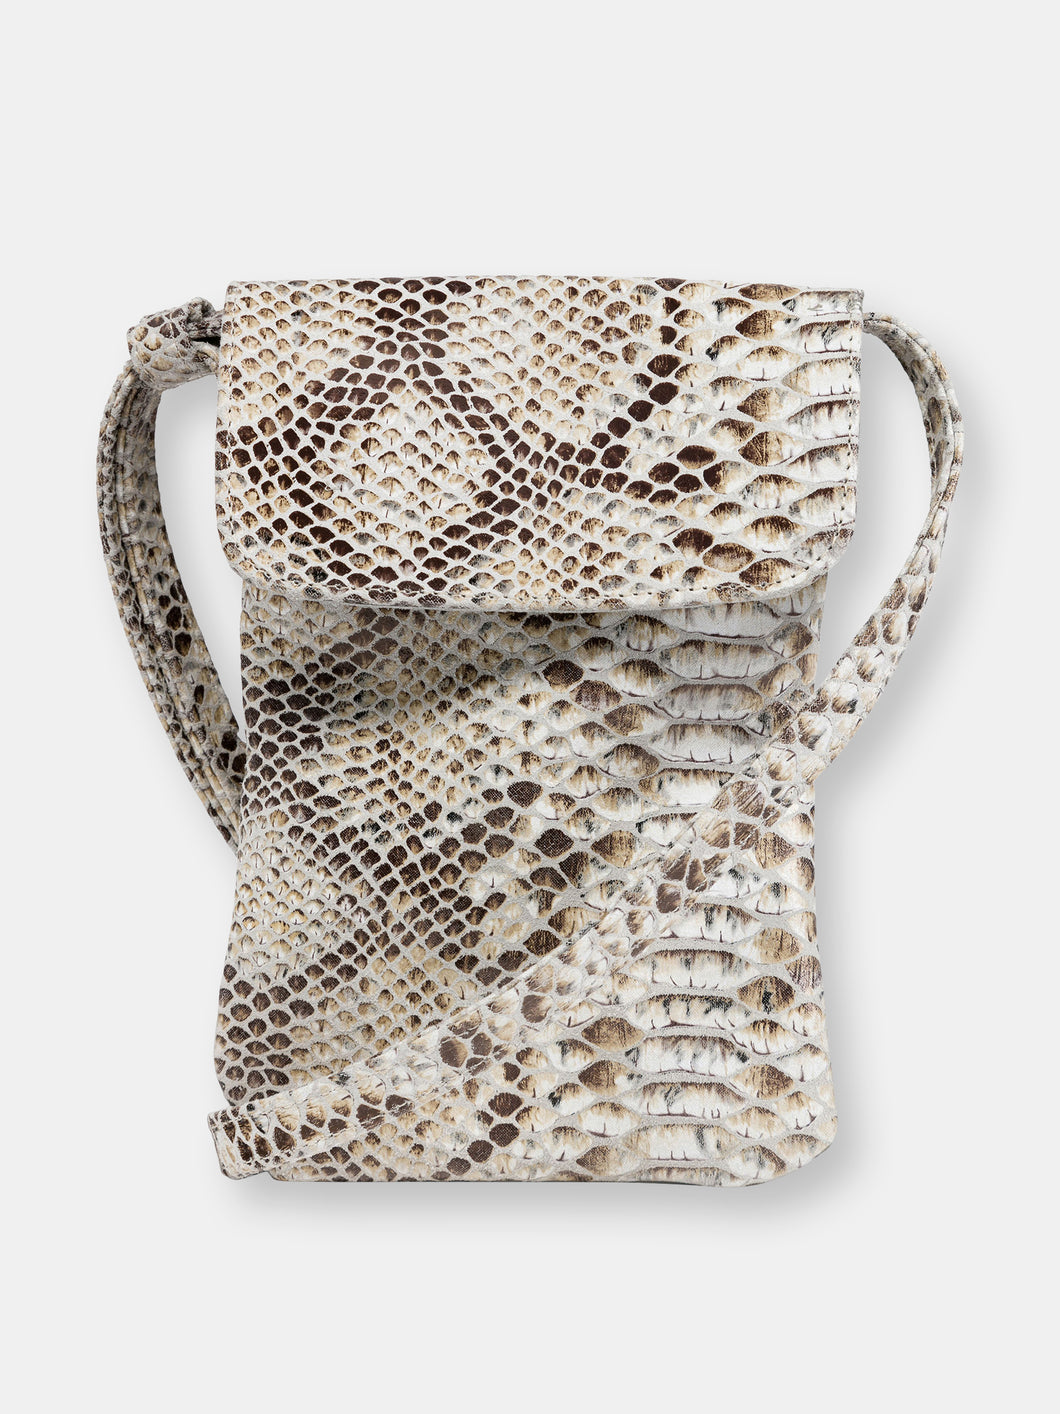 Penny Phone Bag: Camel Snake